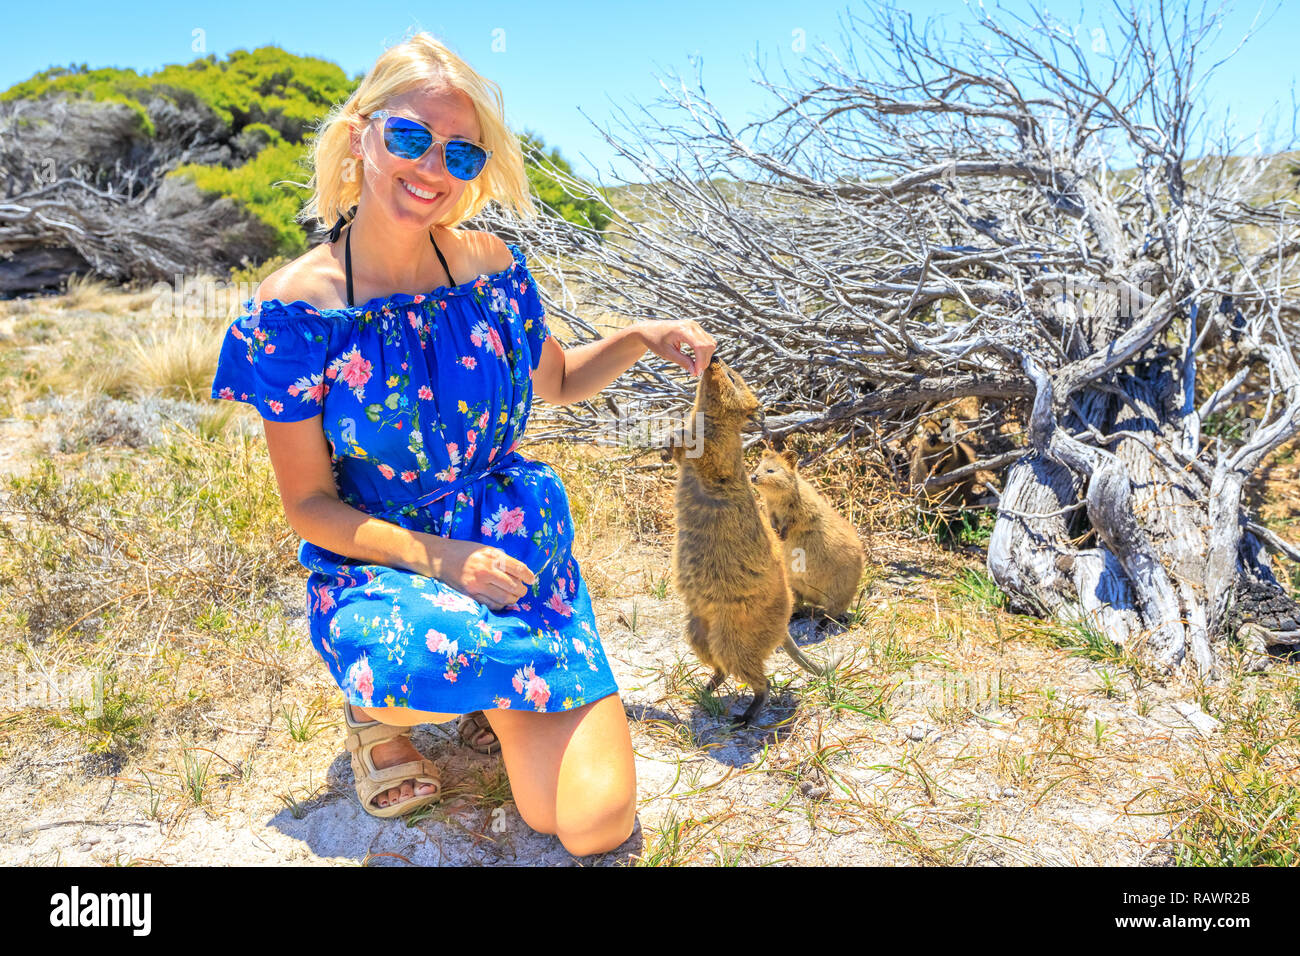 L'inhalation de Quokka deux fille main dans une journée ensoleillée à l'extérieur, vacances d'été, l'Australie. Smiling blonde woman femme touristiques interagit avec curieux Quokka à Rottnest Island, Australie de l'Ouest. Banque D'Images